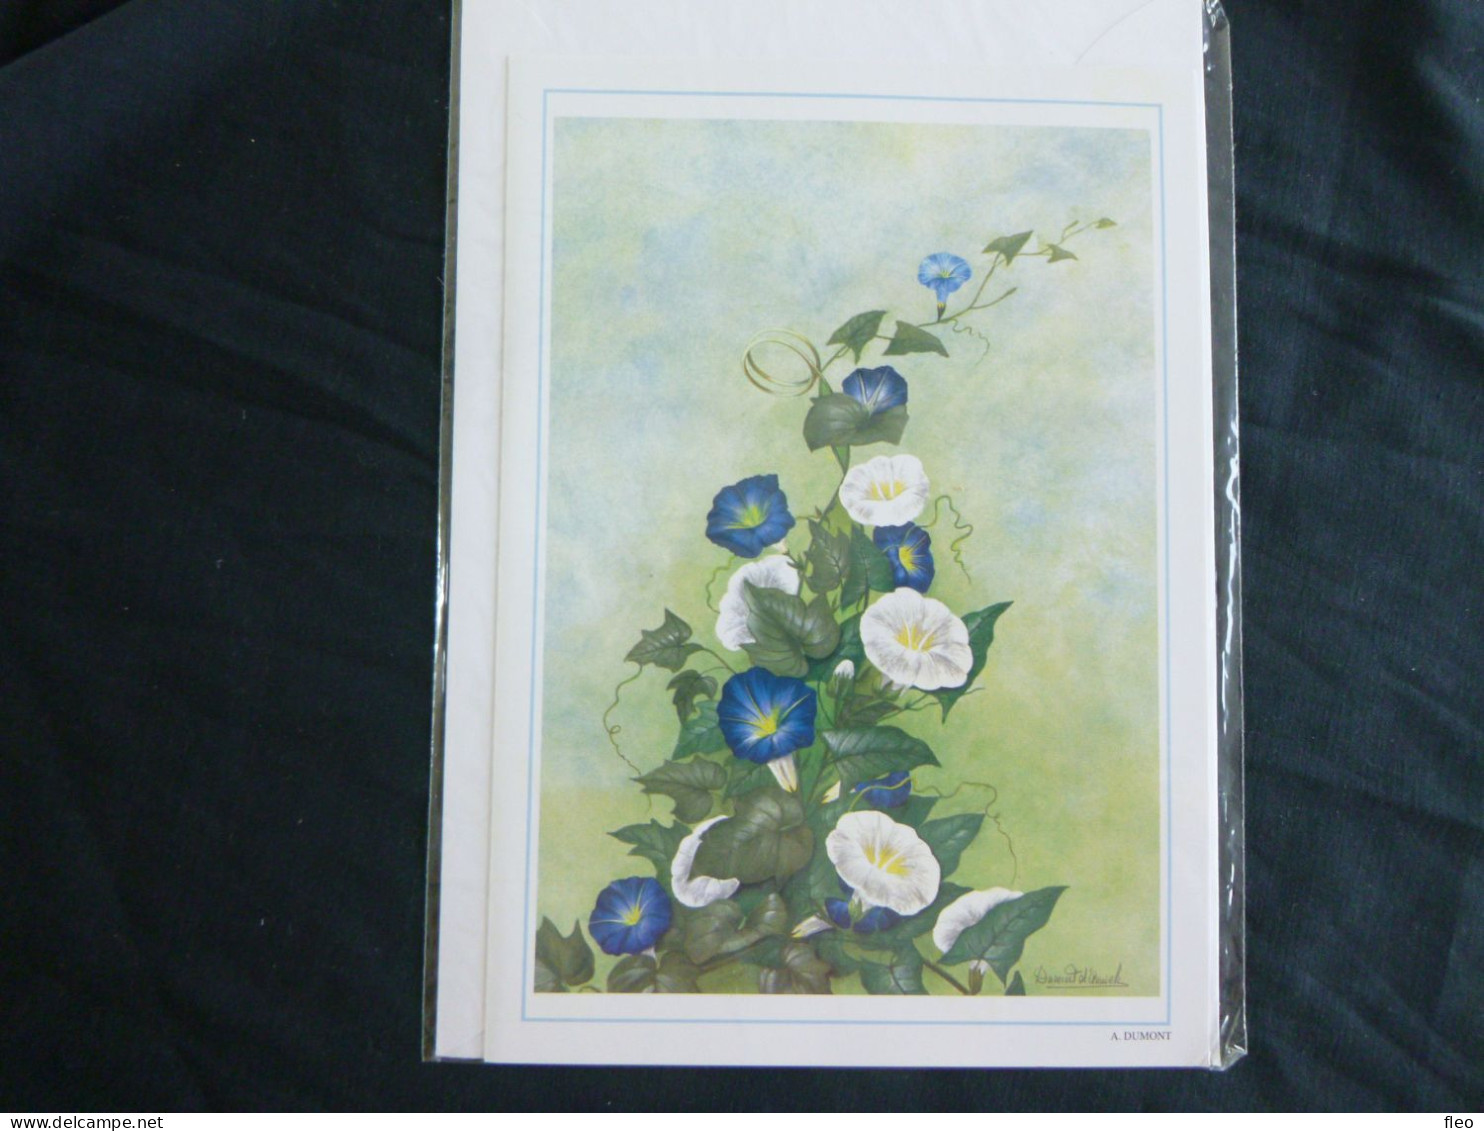 Postogram 93/068 : Together For Ever - A. Dumont - Flowers - Postogram